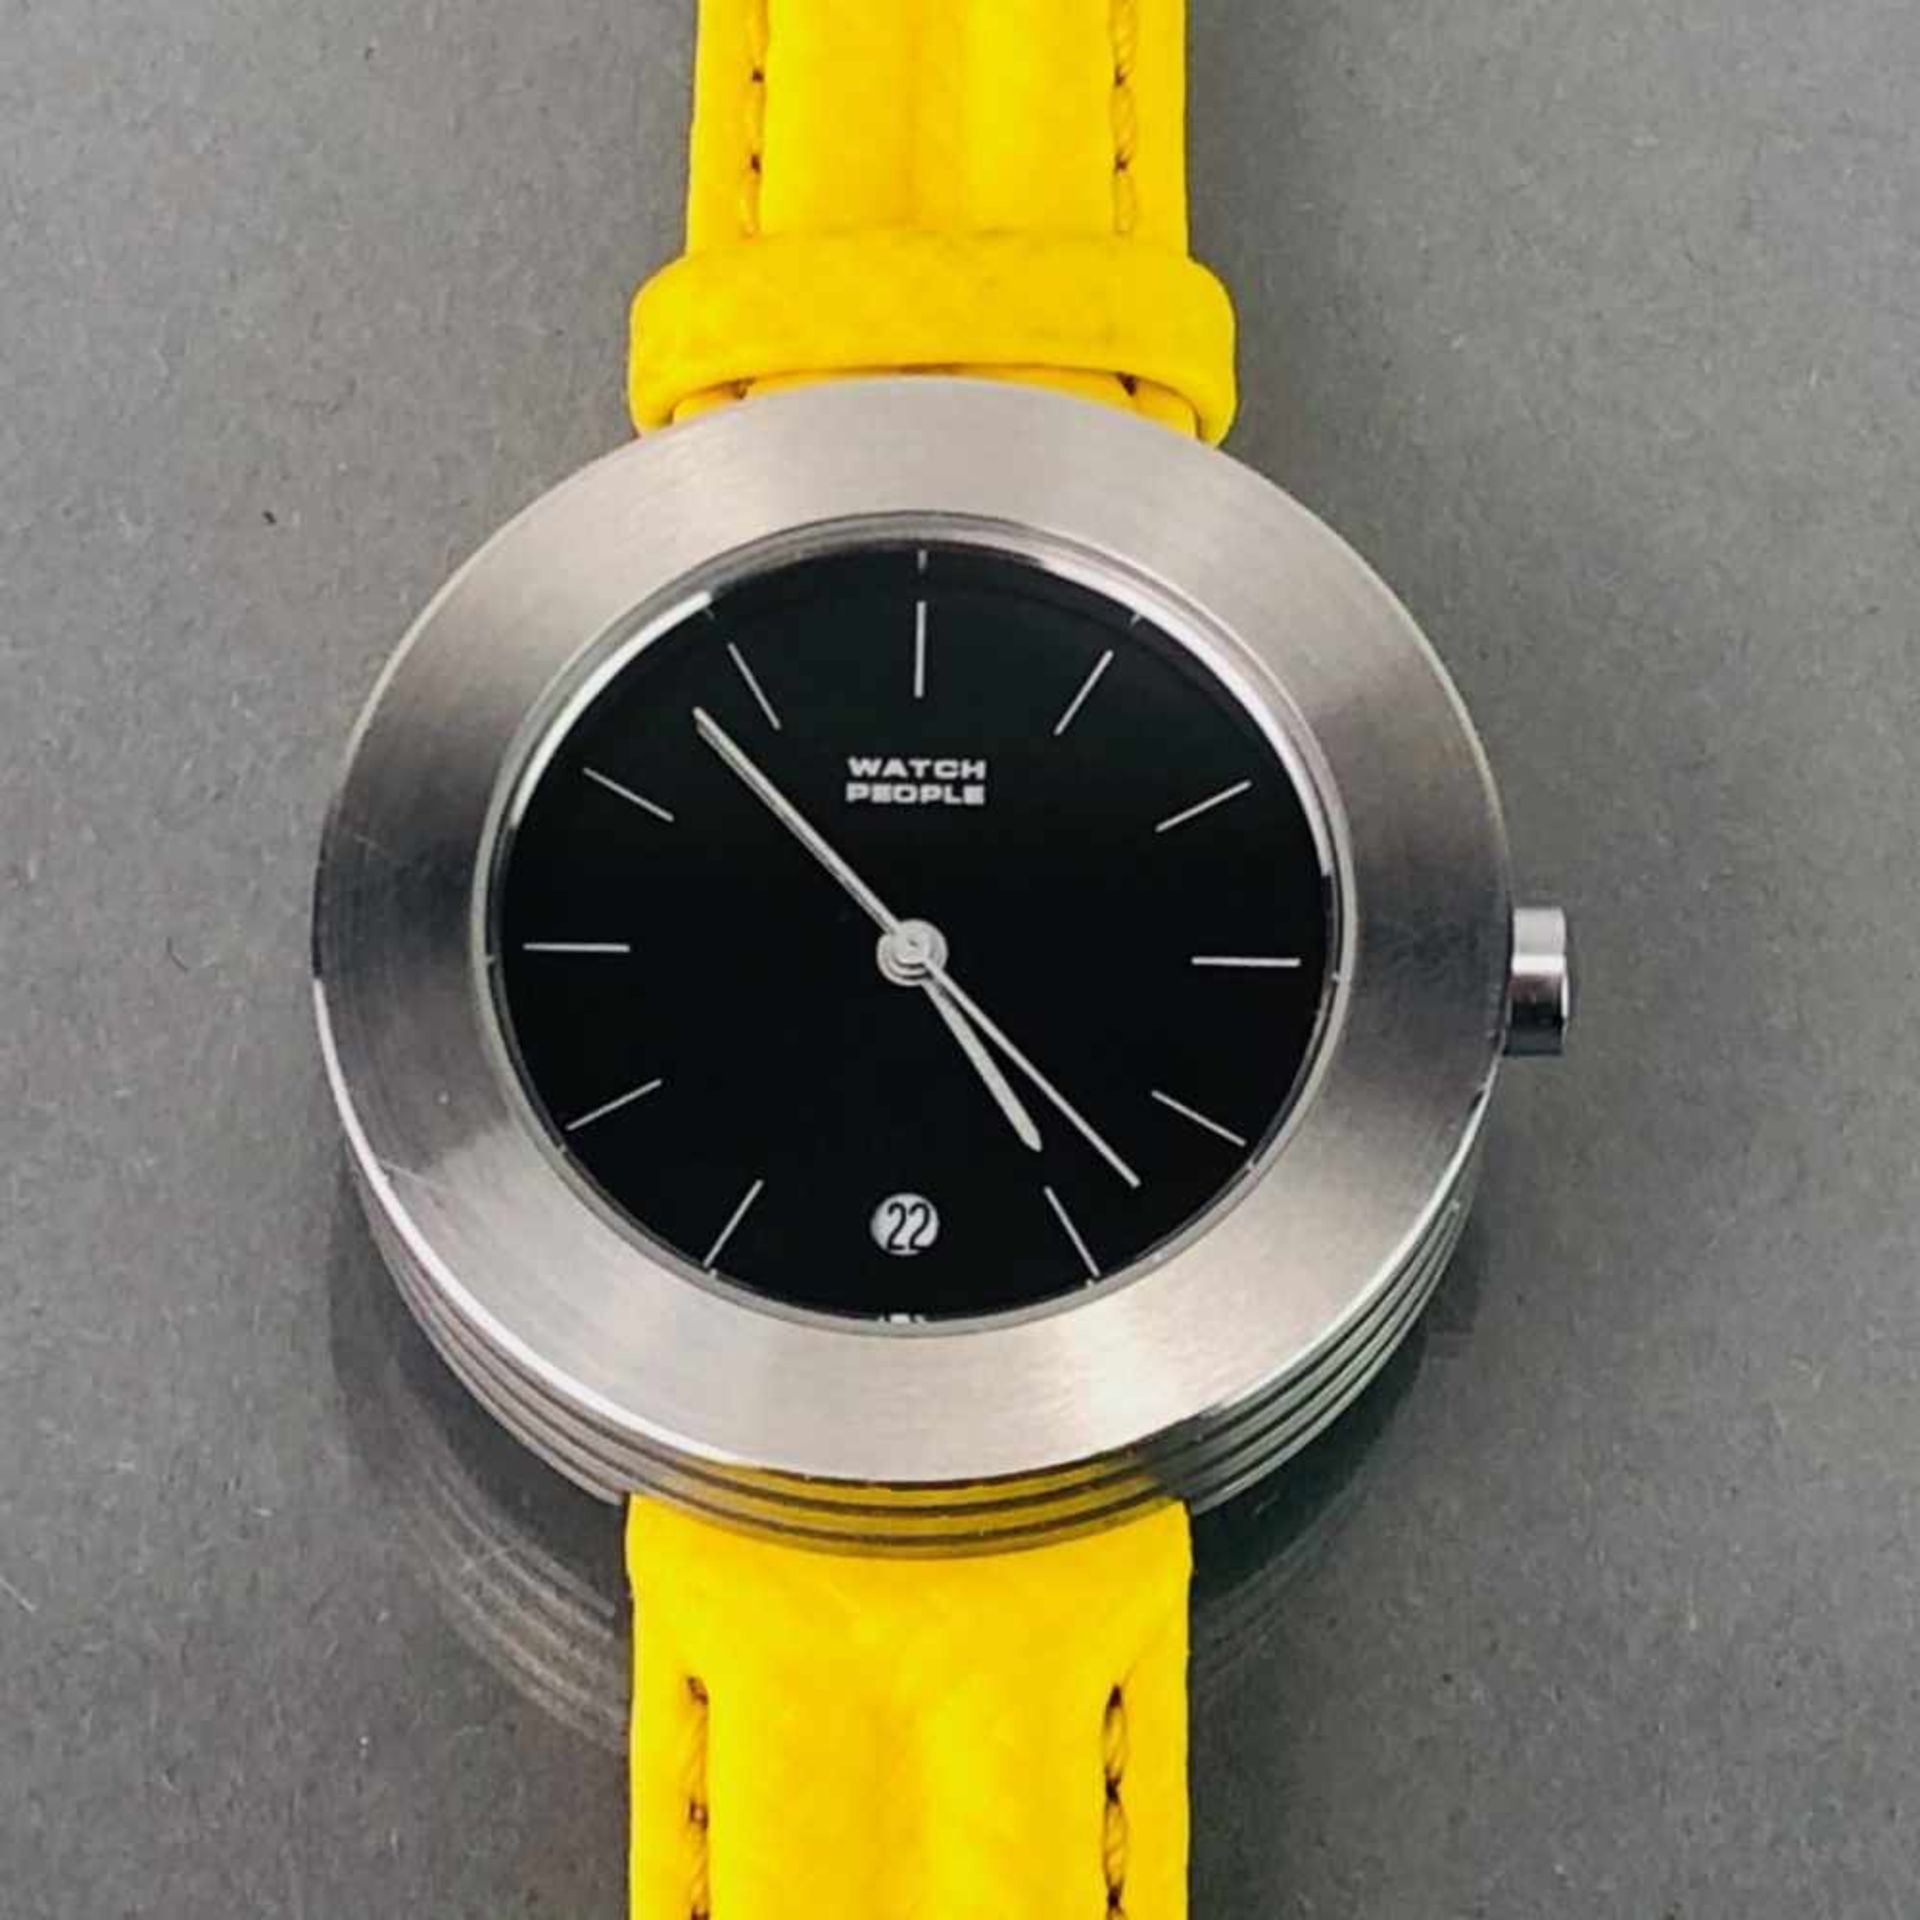 WATCHPEOPLE Armbanduhr TOTO silber/schwarz und gelb. Unisex.WatchPeople Toto, Edelstahl, - Image 2 of 2